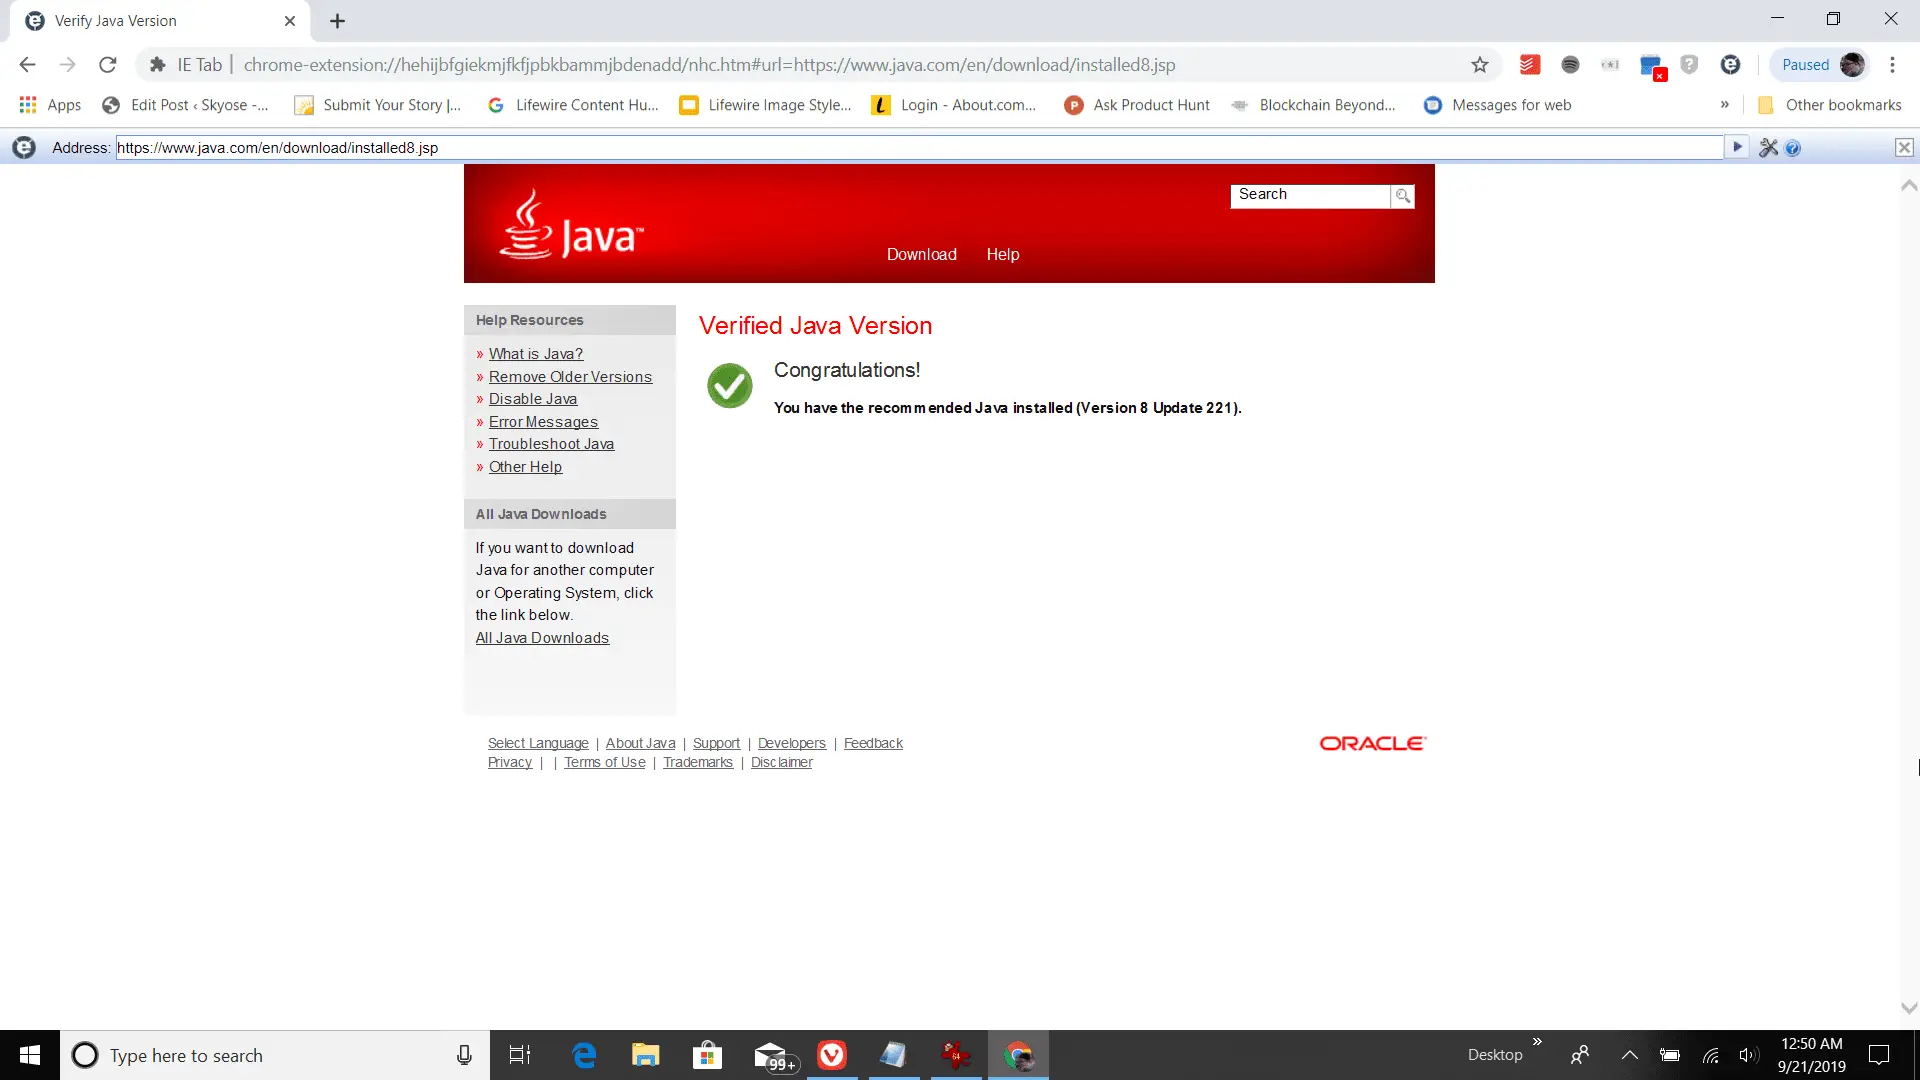 Captura de tela de um teste de versão Java bem-sucedido